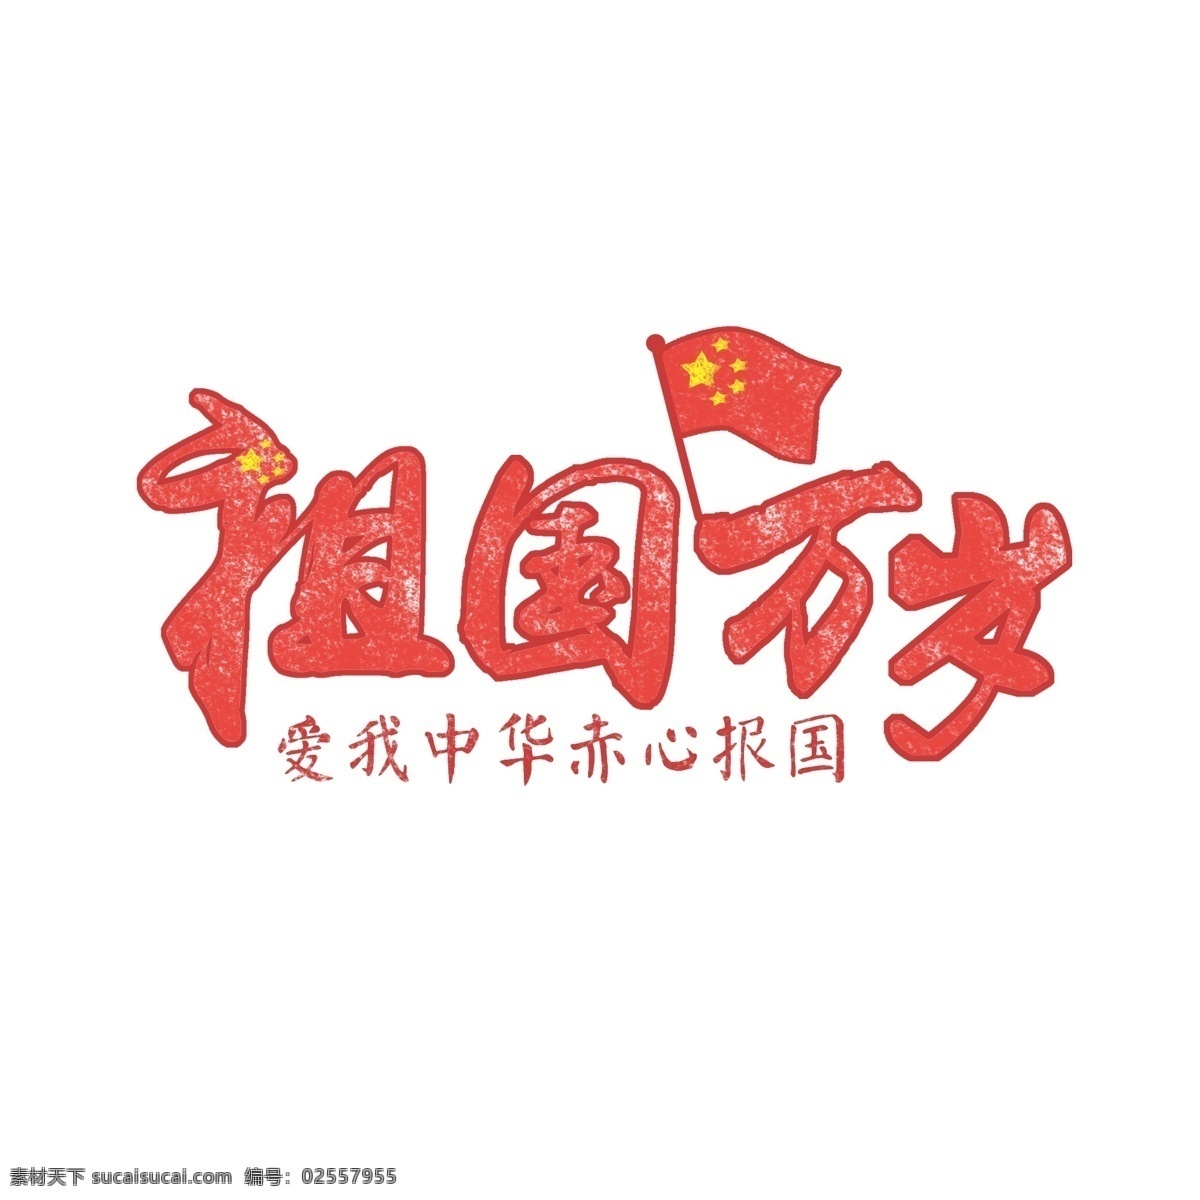 祖国万岁 祖国 爱我中华 中国艺术字 祖国艺术字 字体设计 艺术字体 字体